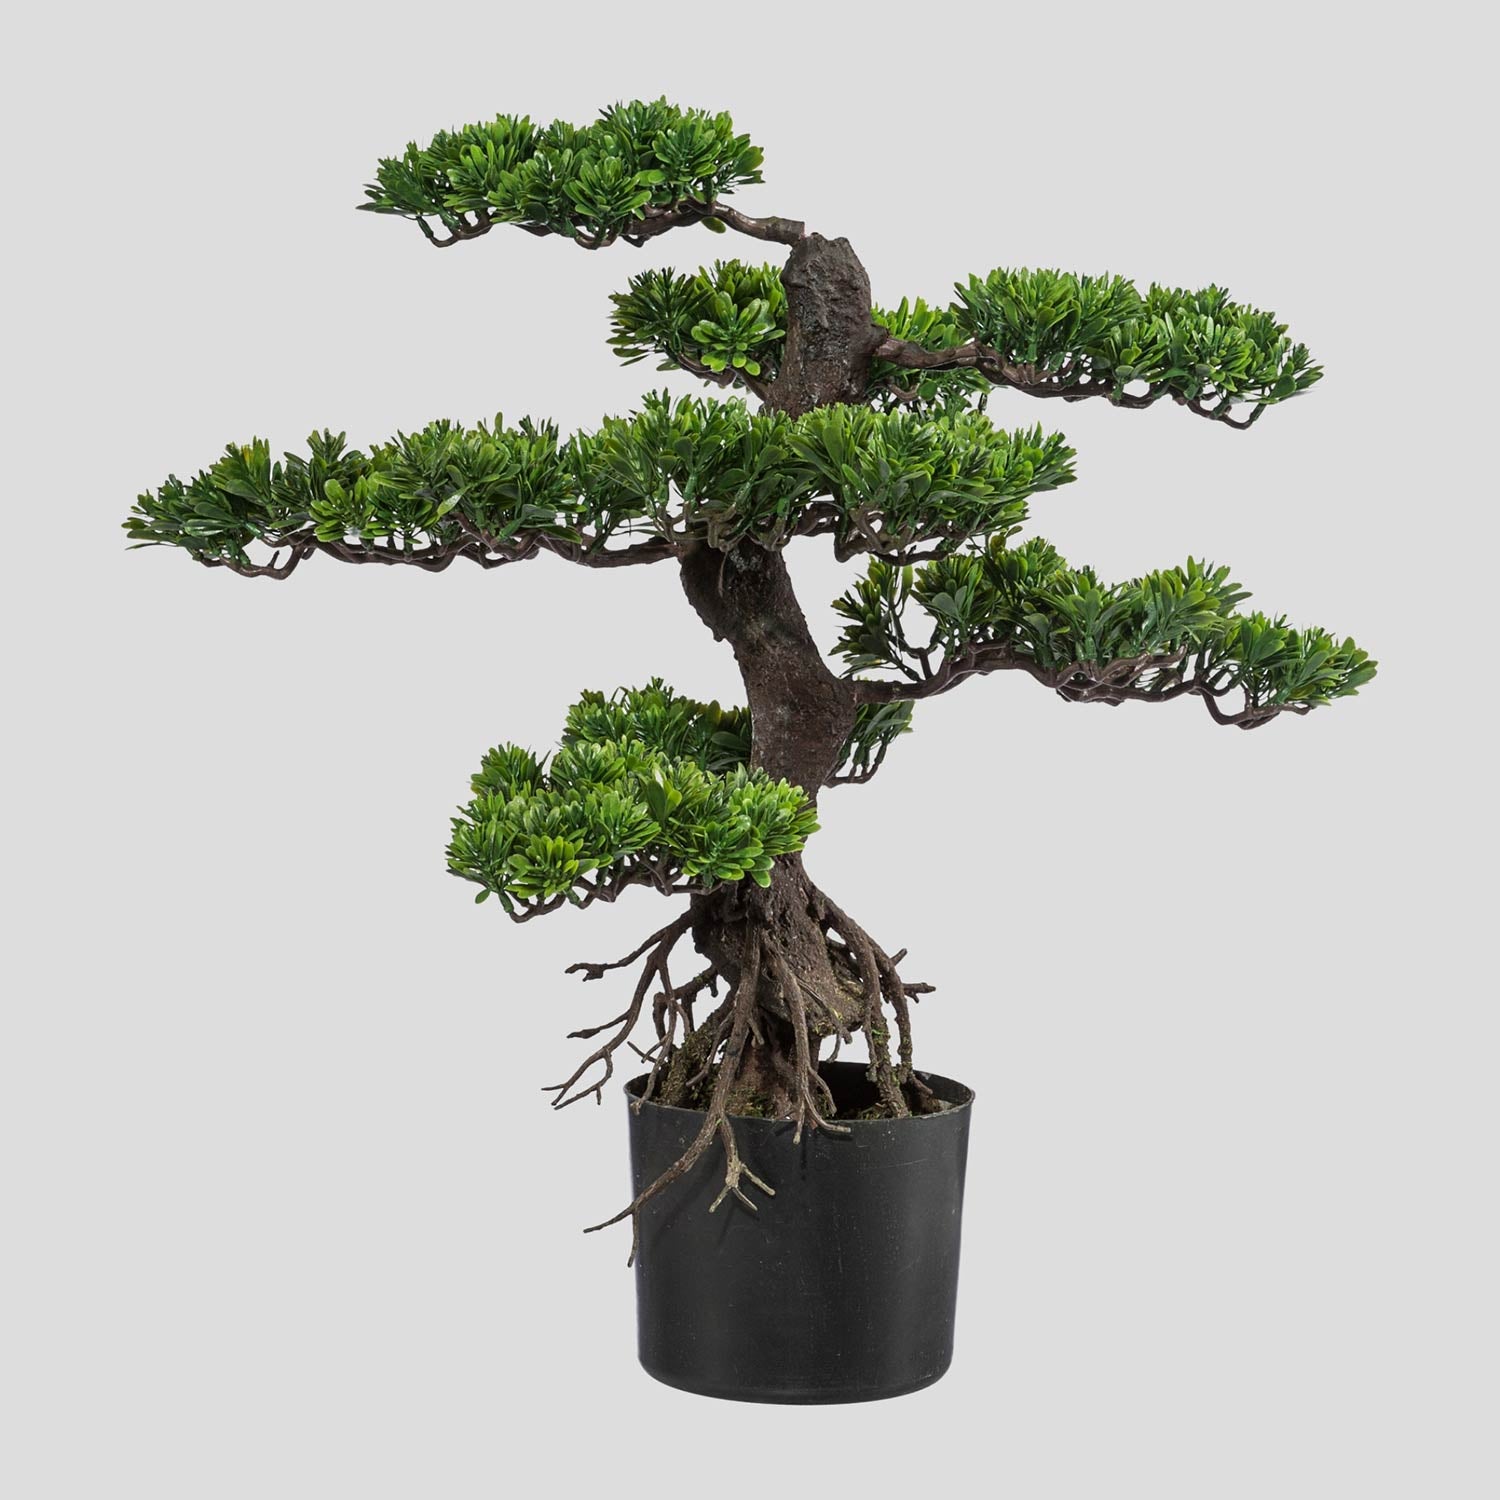 Mesterséges bonsai fa, fekete színű műanyag cserépben.